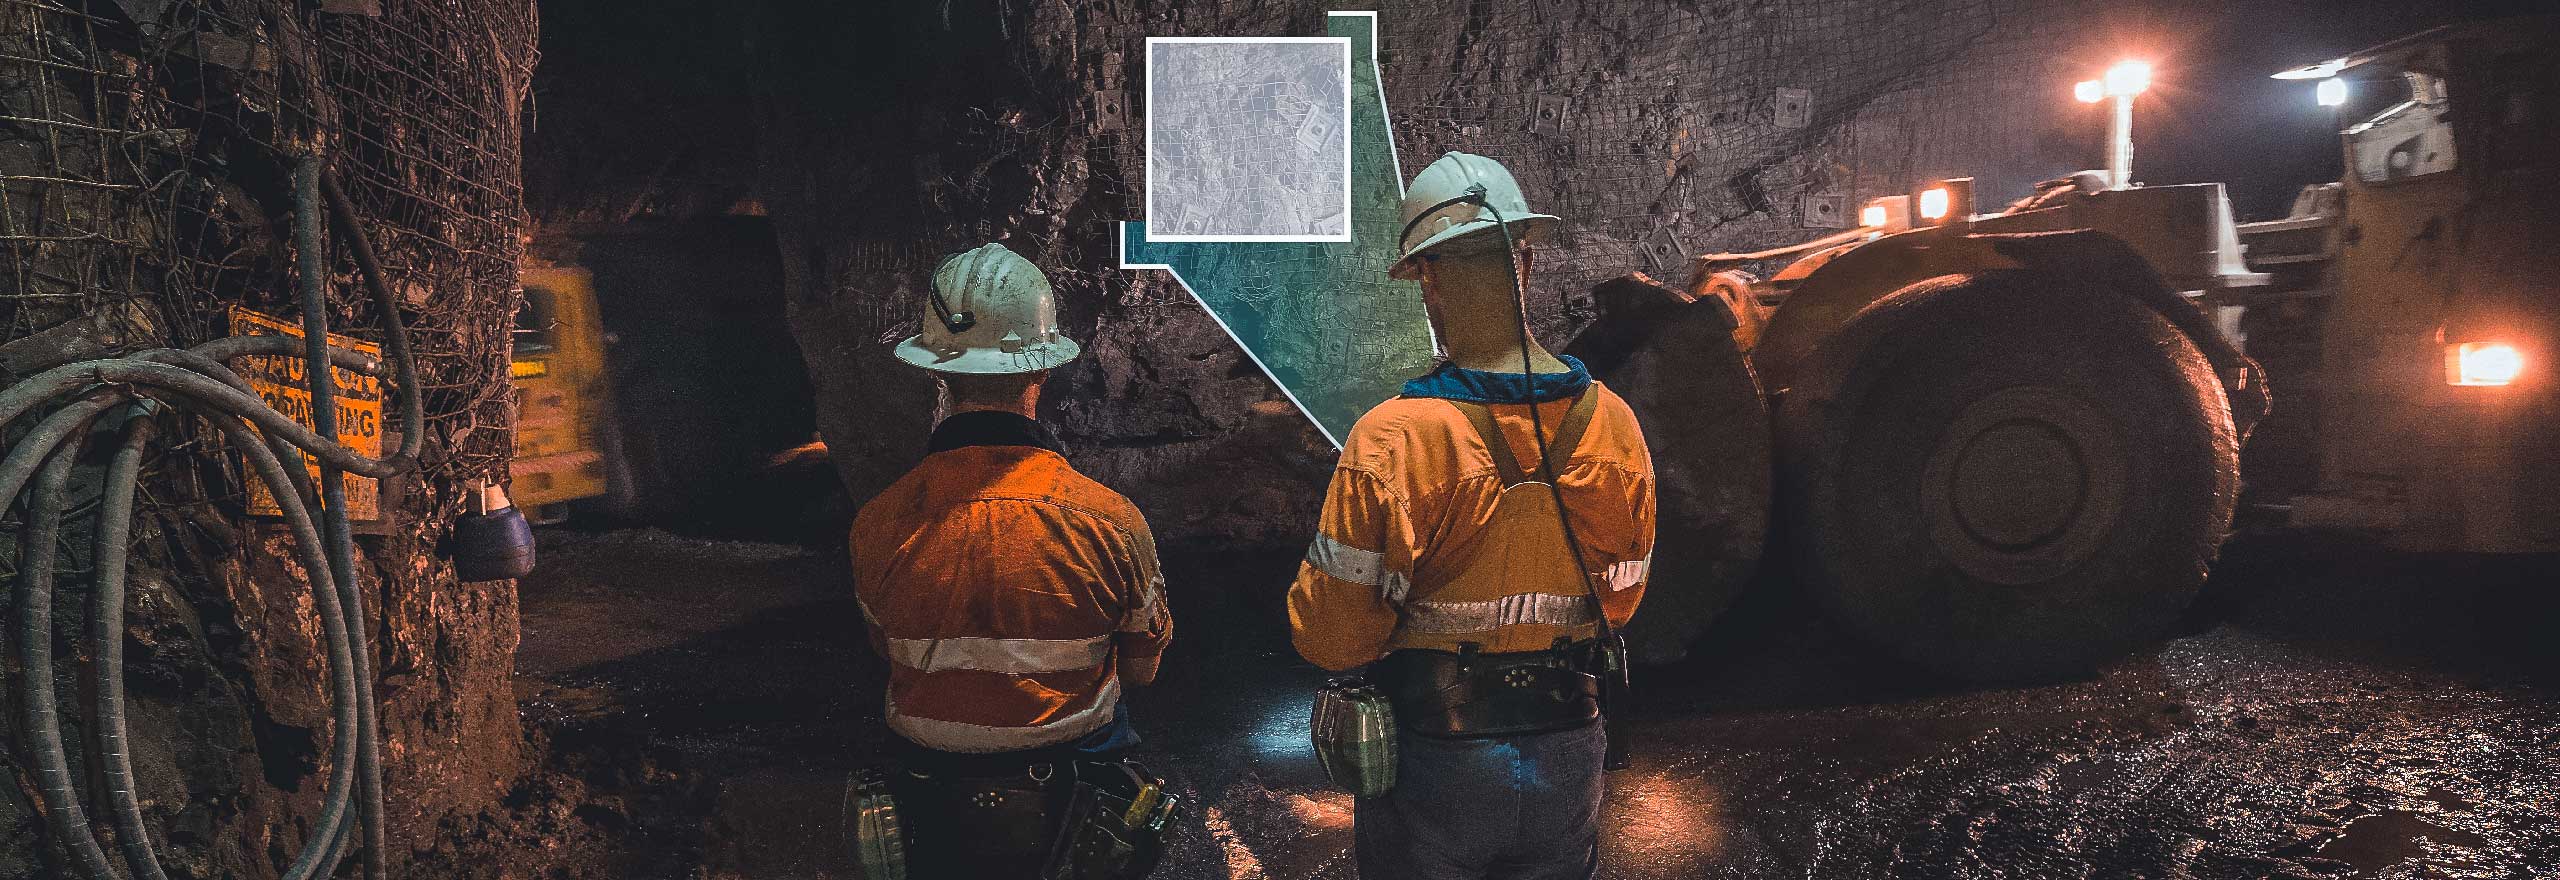 Porta le miniere sotterranee a nuovi livelli